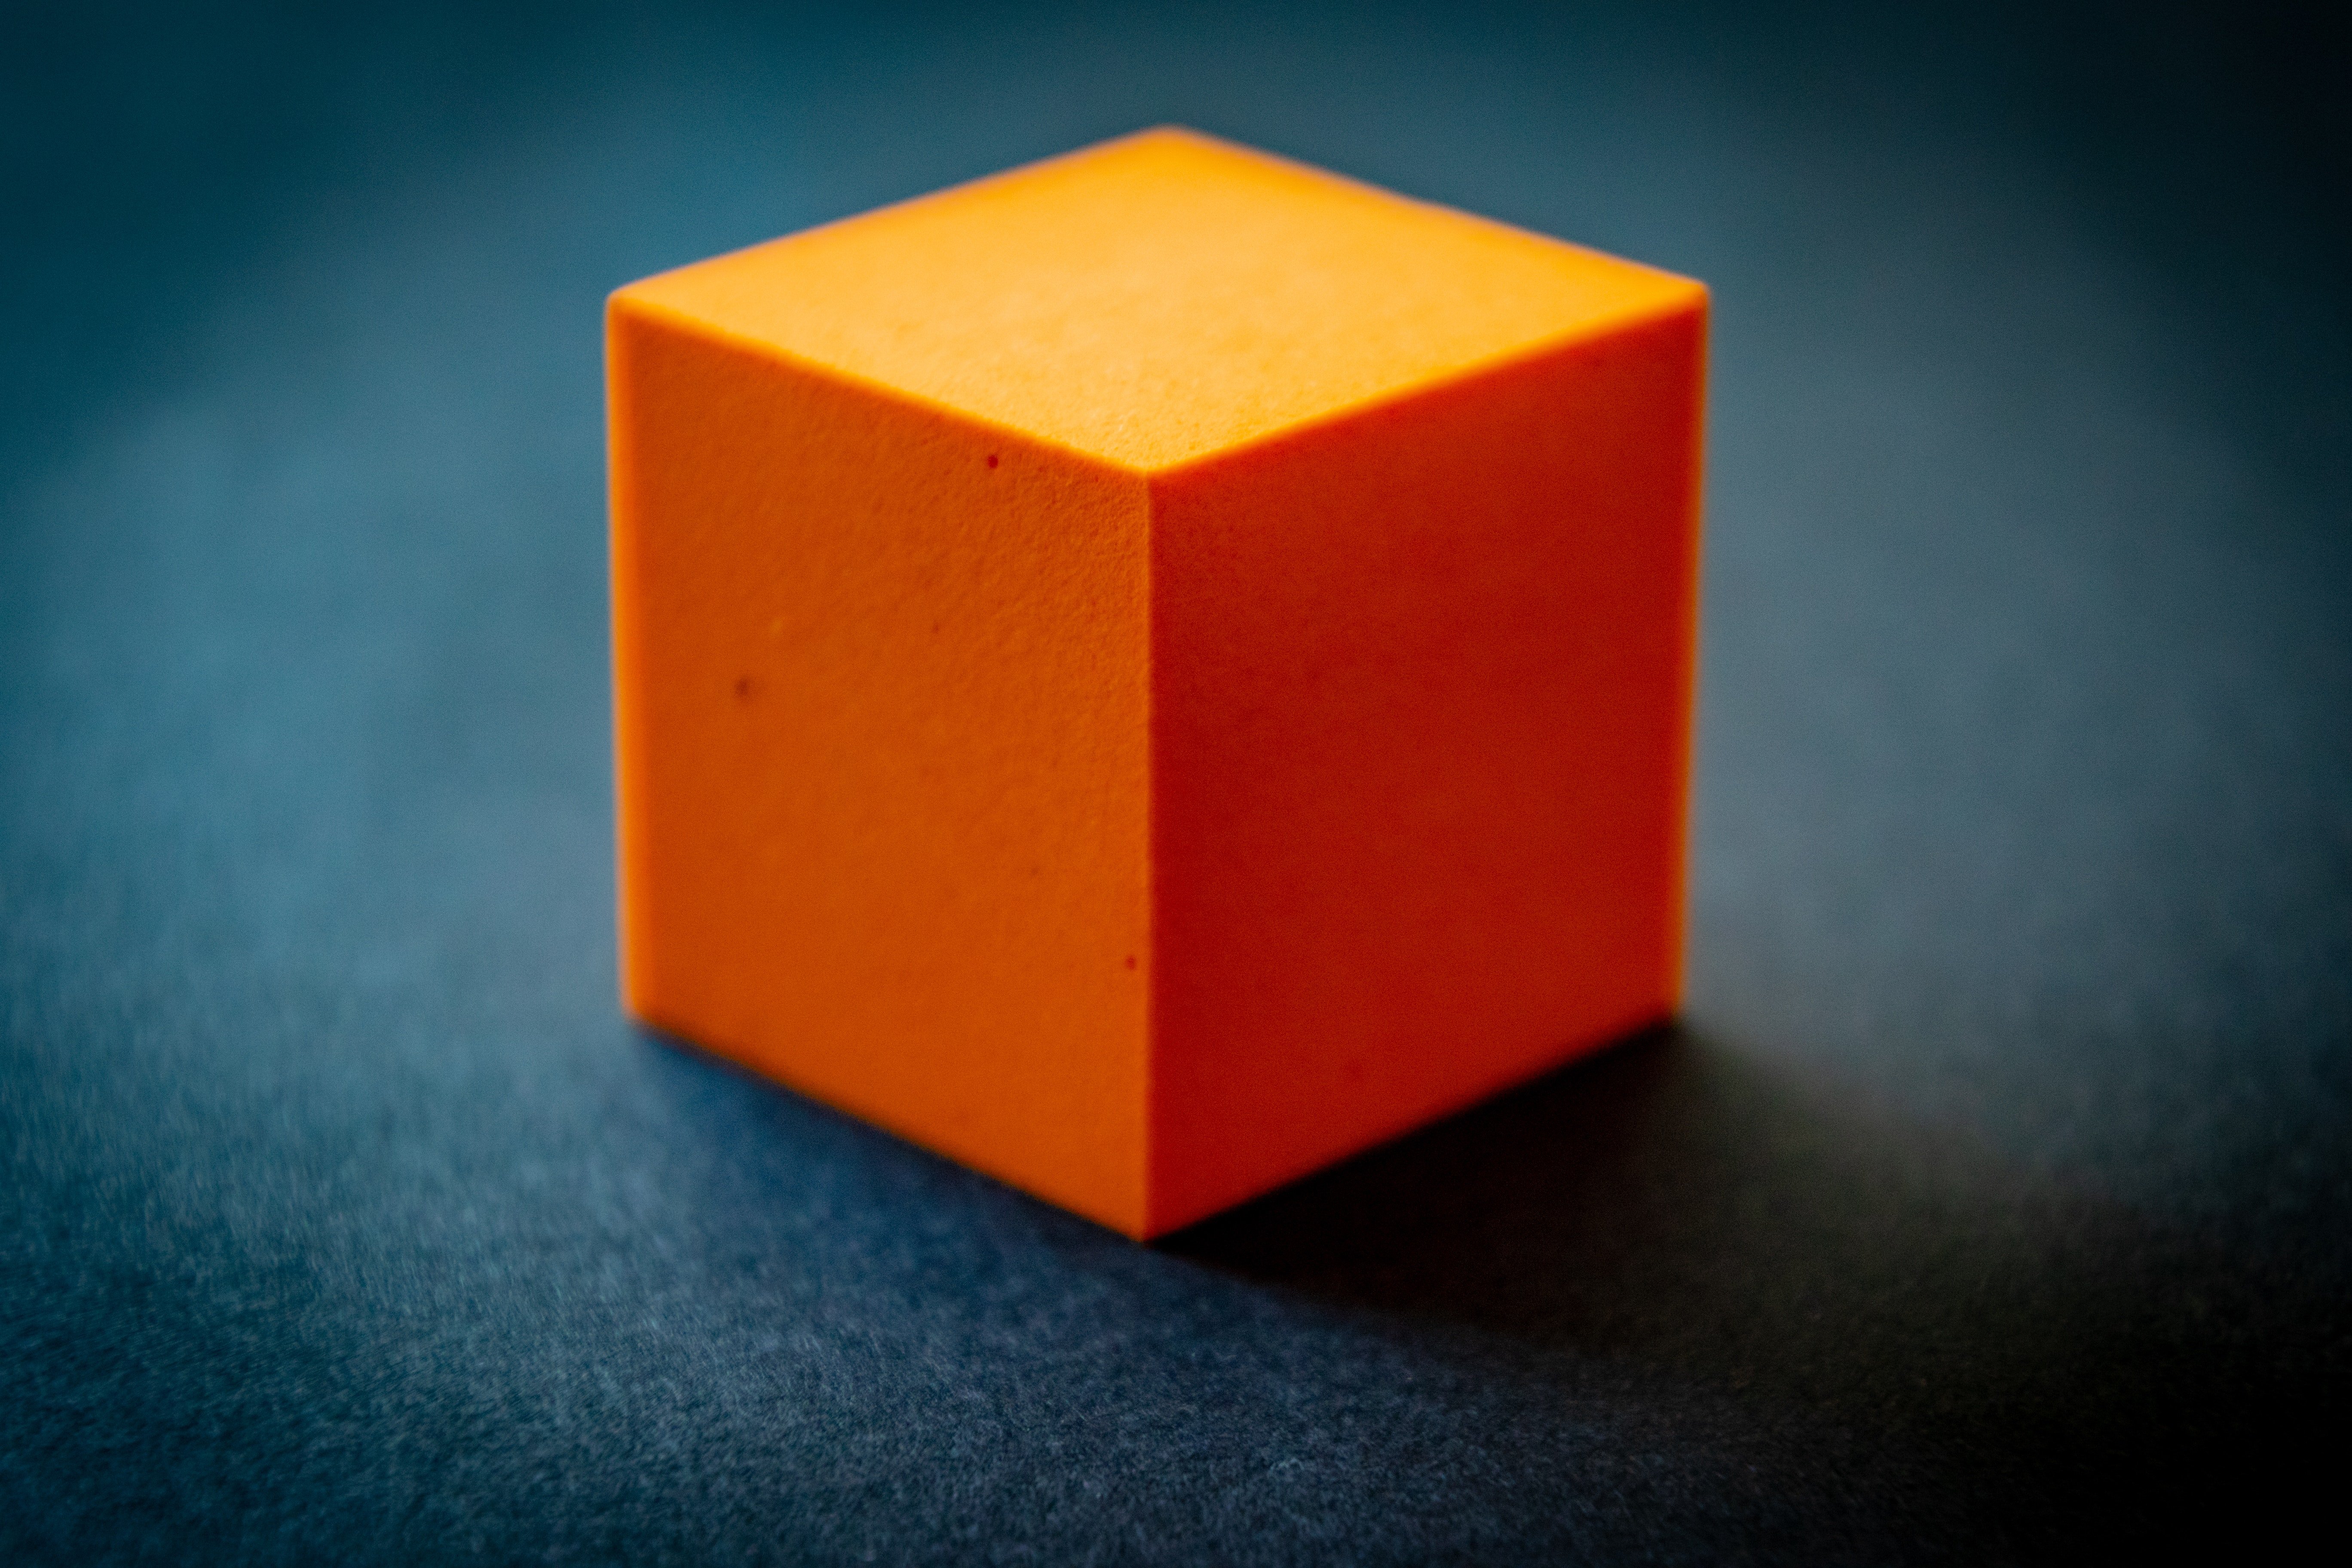 More cubes. Куб. Оранжевый кубик. 3д кубик. Куб Геометрическая фигура.